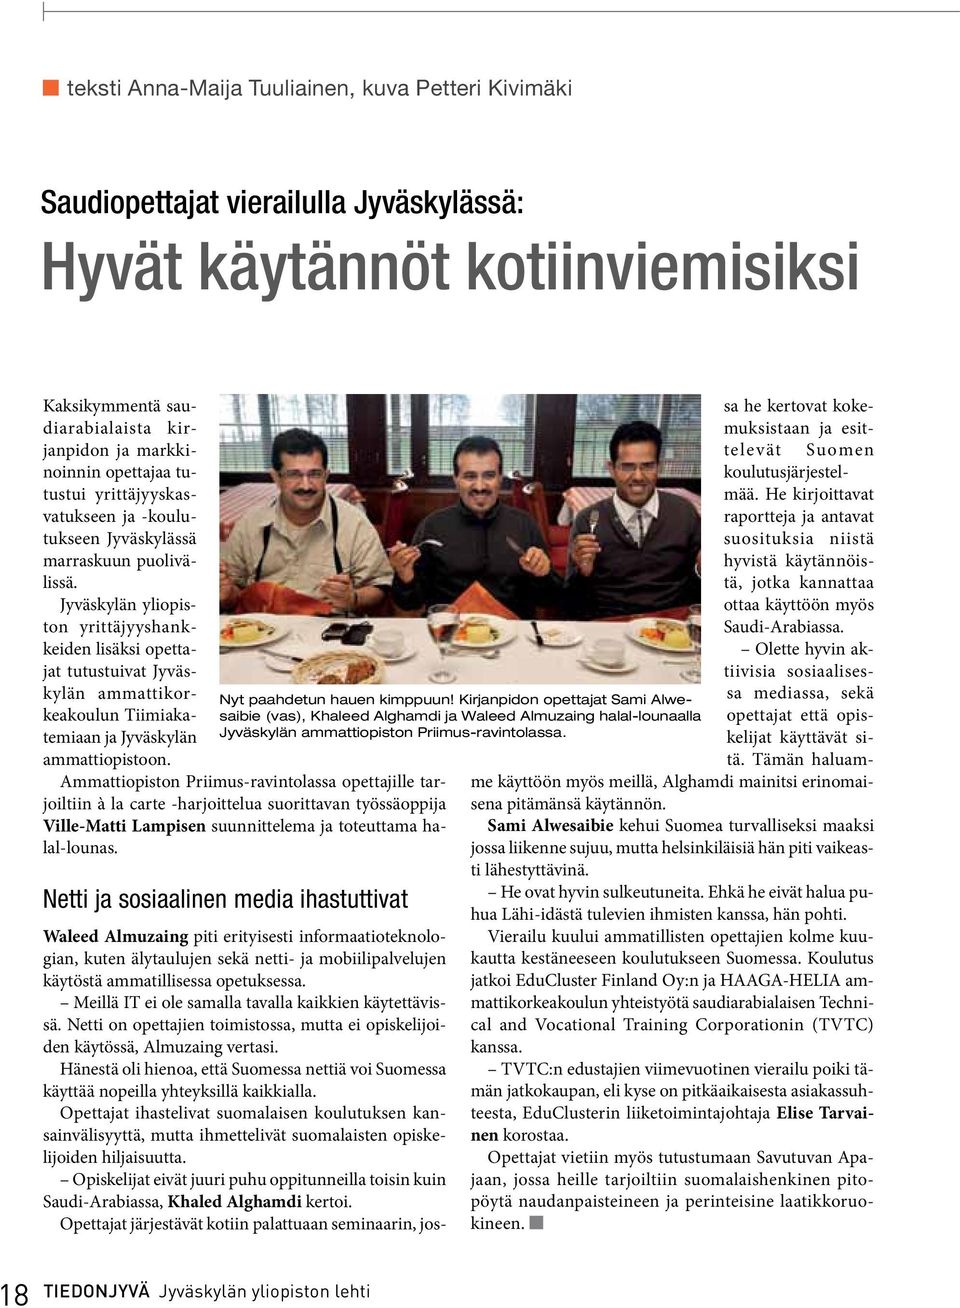 Jyväskylän yliopiston yrittäjyyshankkeiden lisäksi opettajat tutustuivat Jyväskylän ammattikorkeakoulun Tiimiakatemiaan ja Jyväskylän ammattiopistoon.